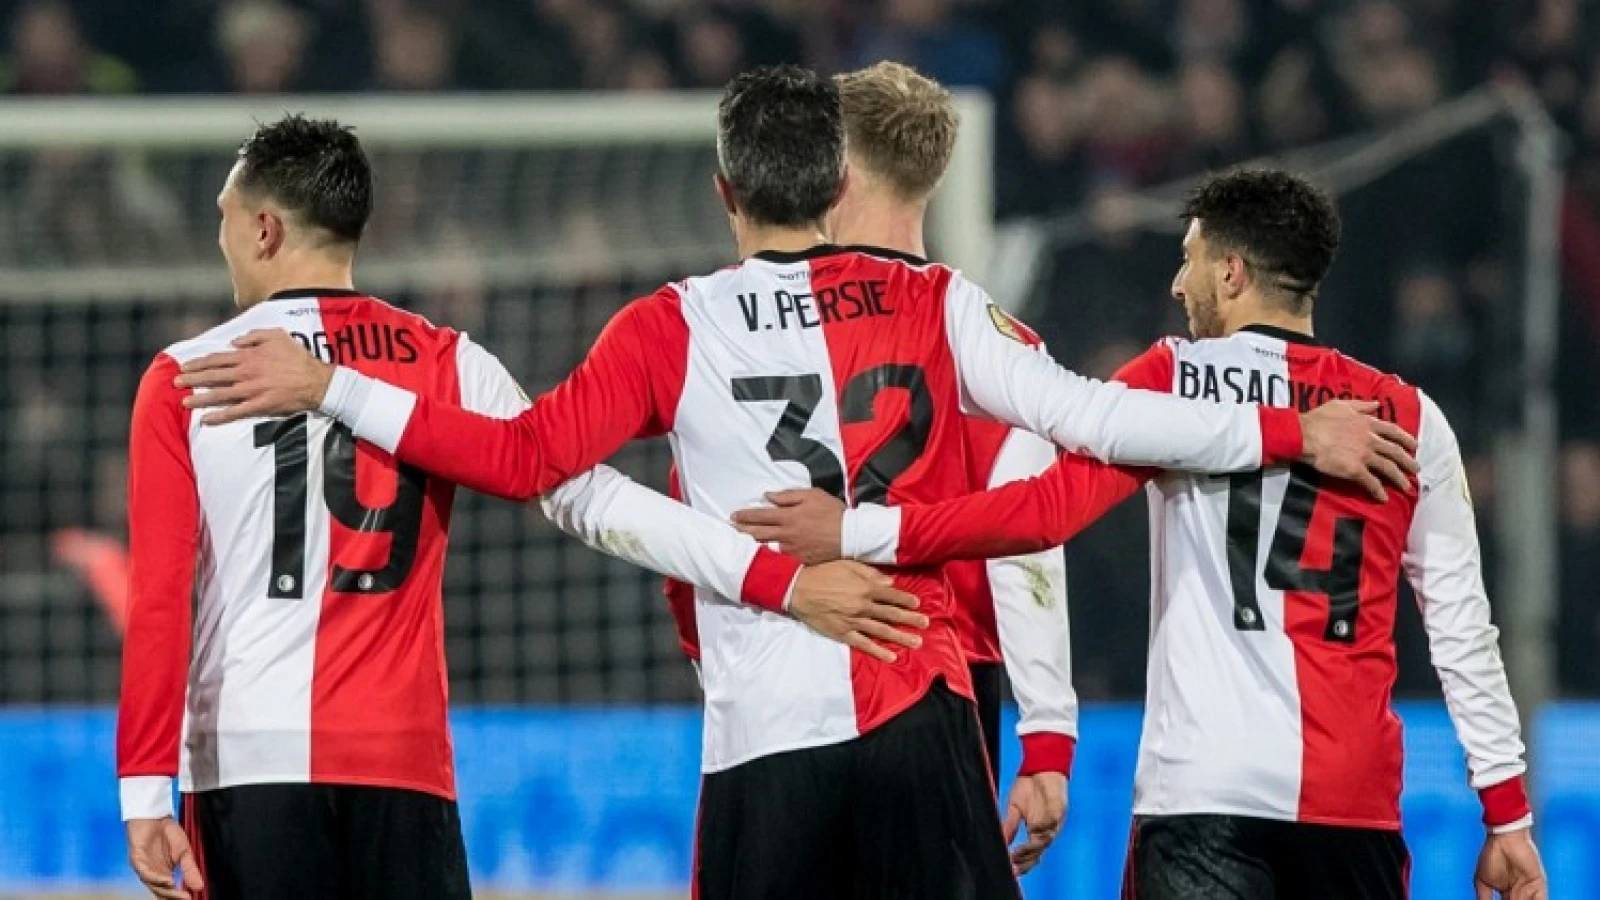 LIVE | Vitesse - Feyenoord 3-1 | Einde wedstrijd